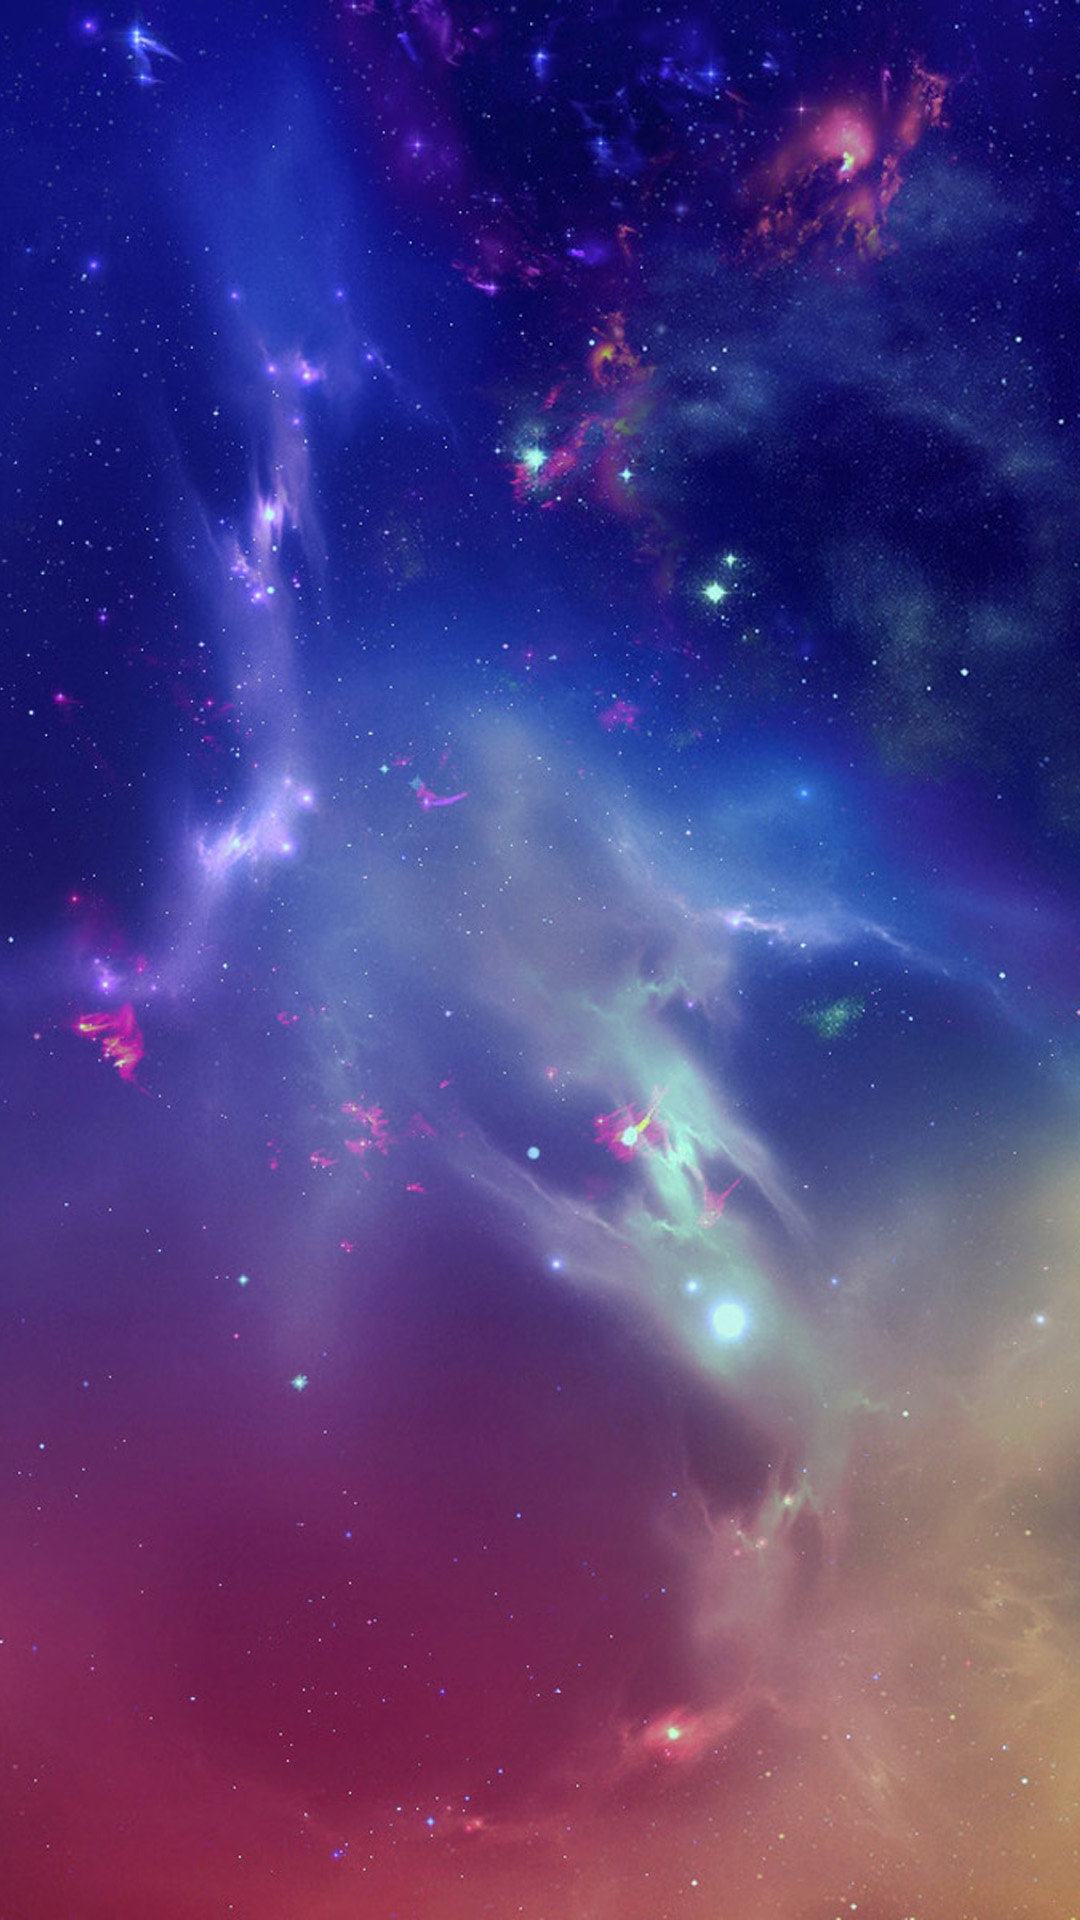 Chiêm ngưỡng bức tranh về vũ trụ tuyệt đẹp với hình nền Space nebula iPhone 6 plus wallpaper. Với công nghệ phân tích ánh sáng tân tiến, hình ảnh trông sẽ rất chân thật và sống động. Hãy cùng giải tỏa tâm trí sau những giờ làm việc căng thẳng với một bức tranh về vũ trụ tuyệt đẹp này.